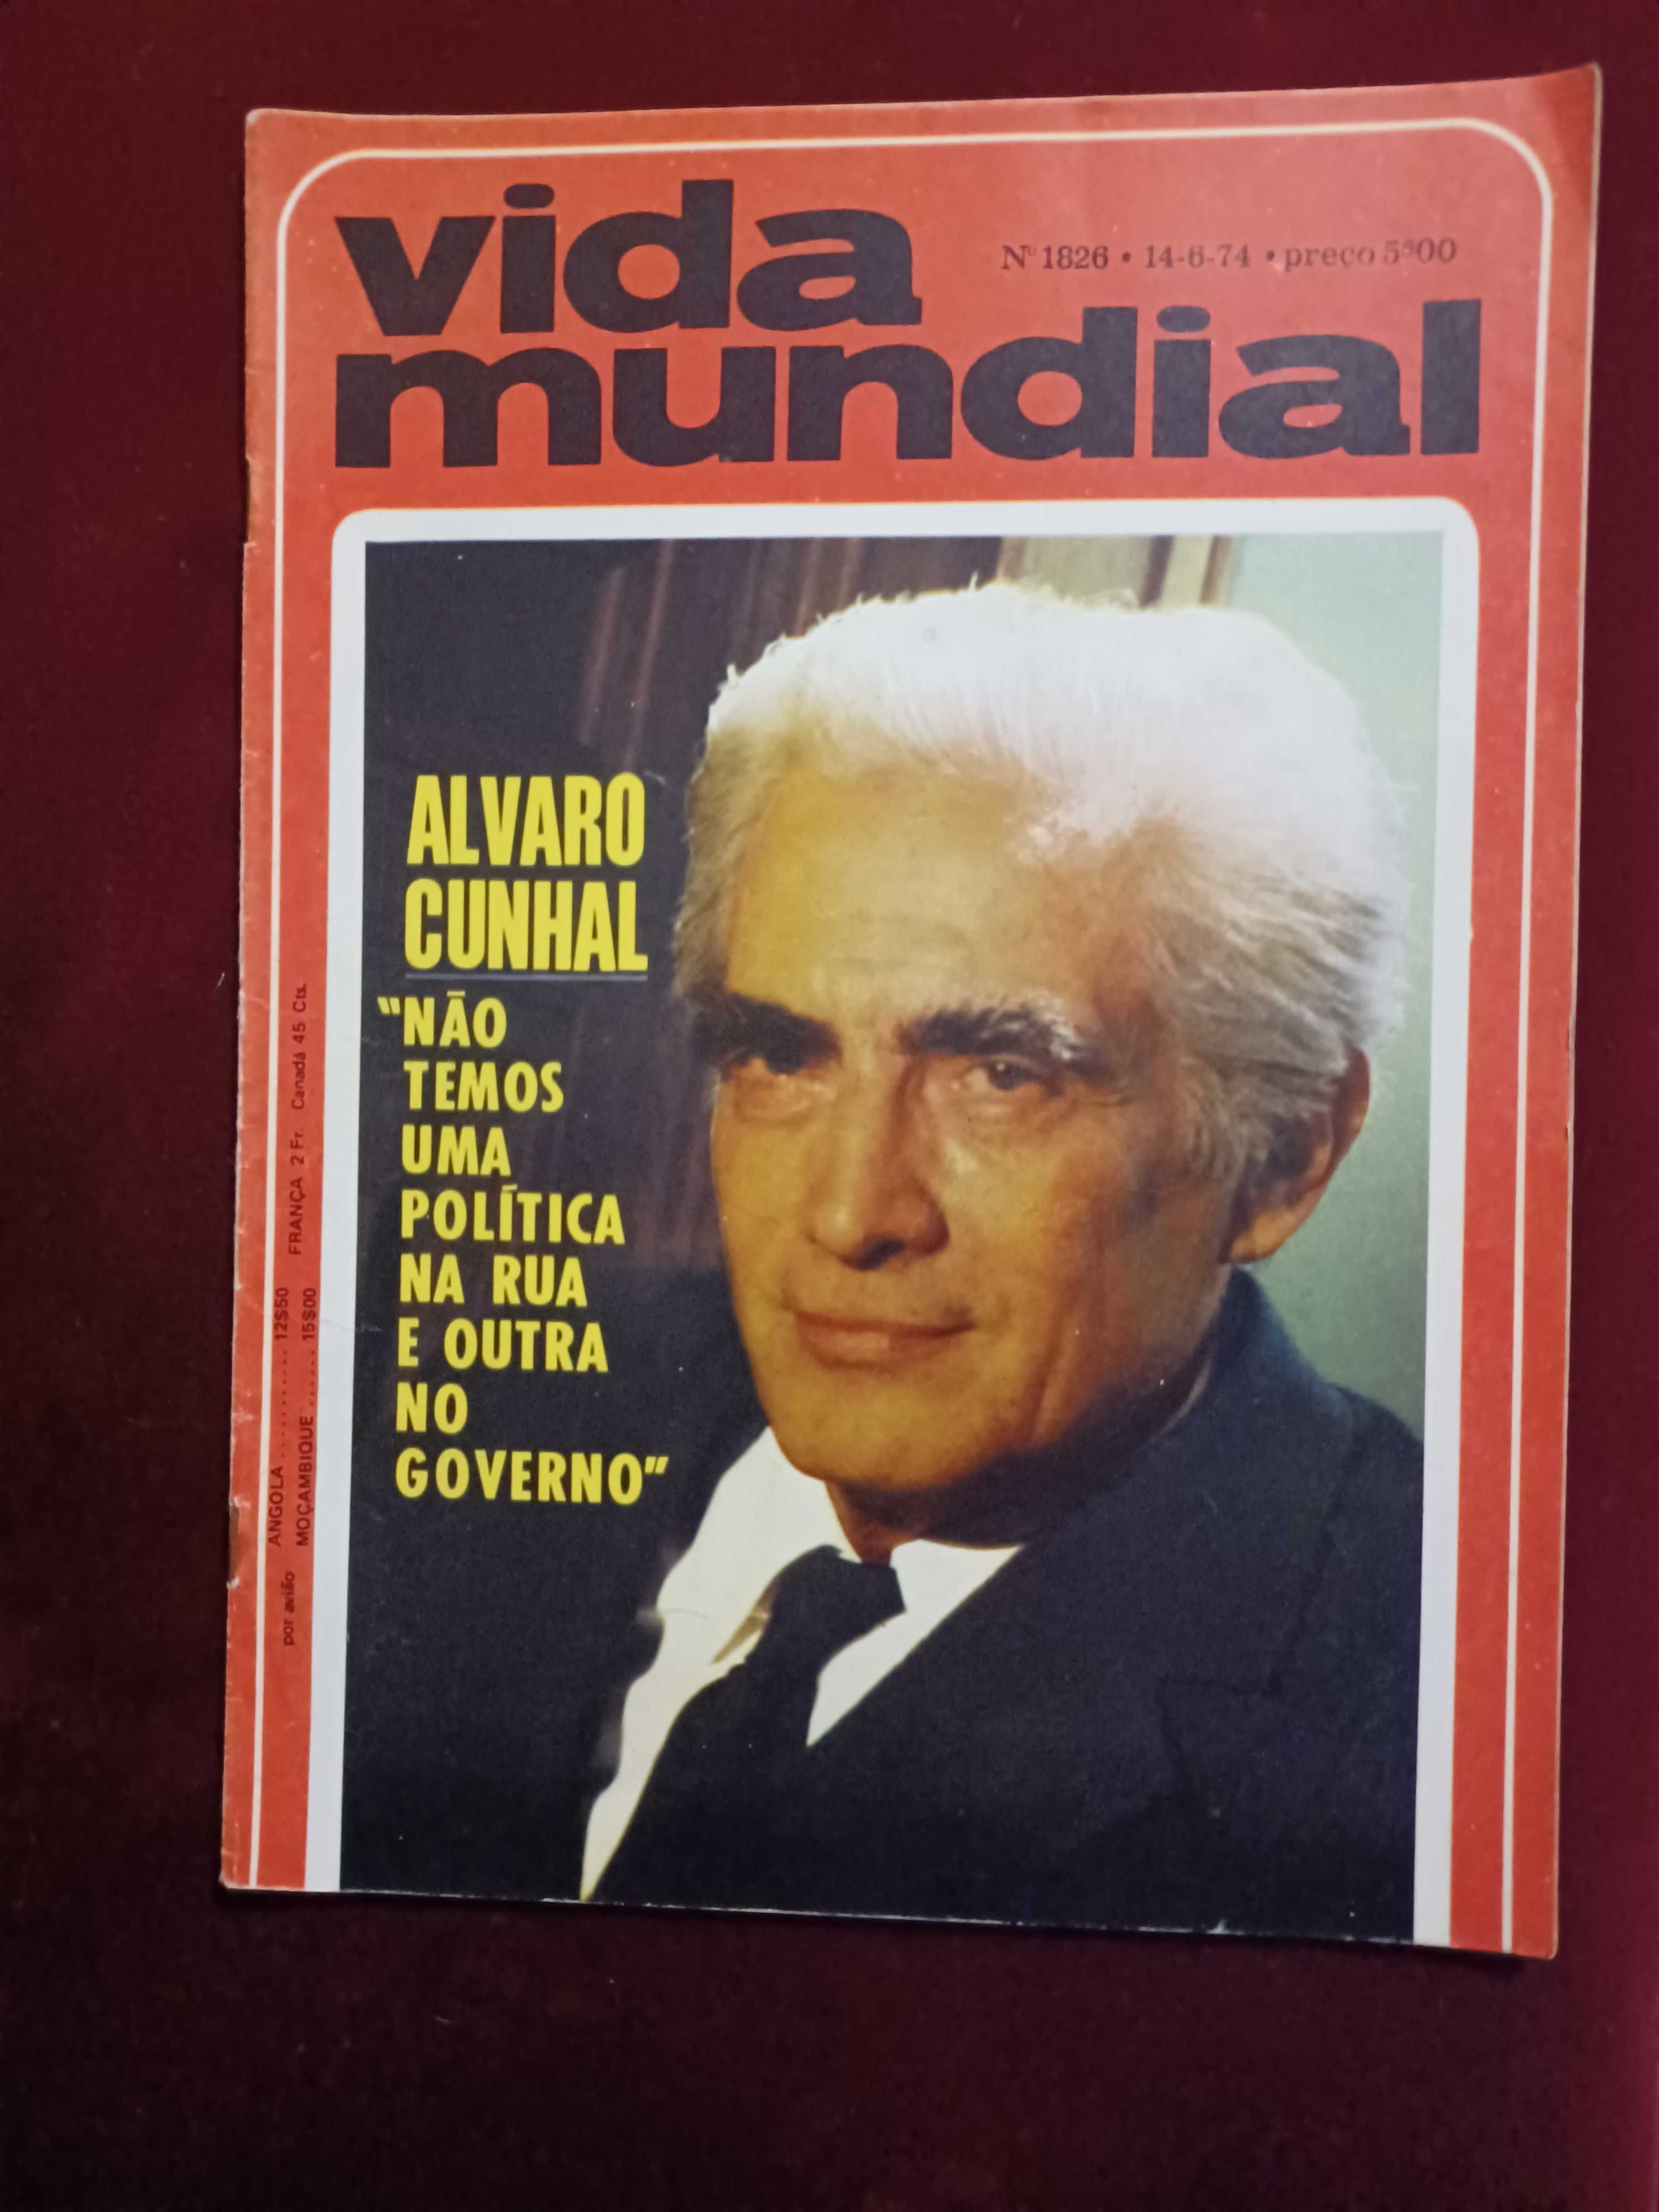 Alvaro Cunhal  - Vida Mundial